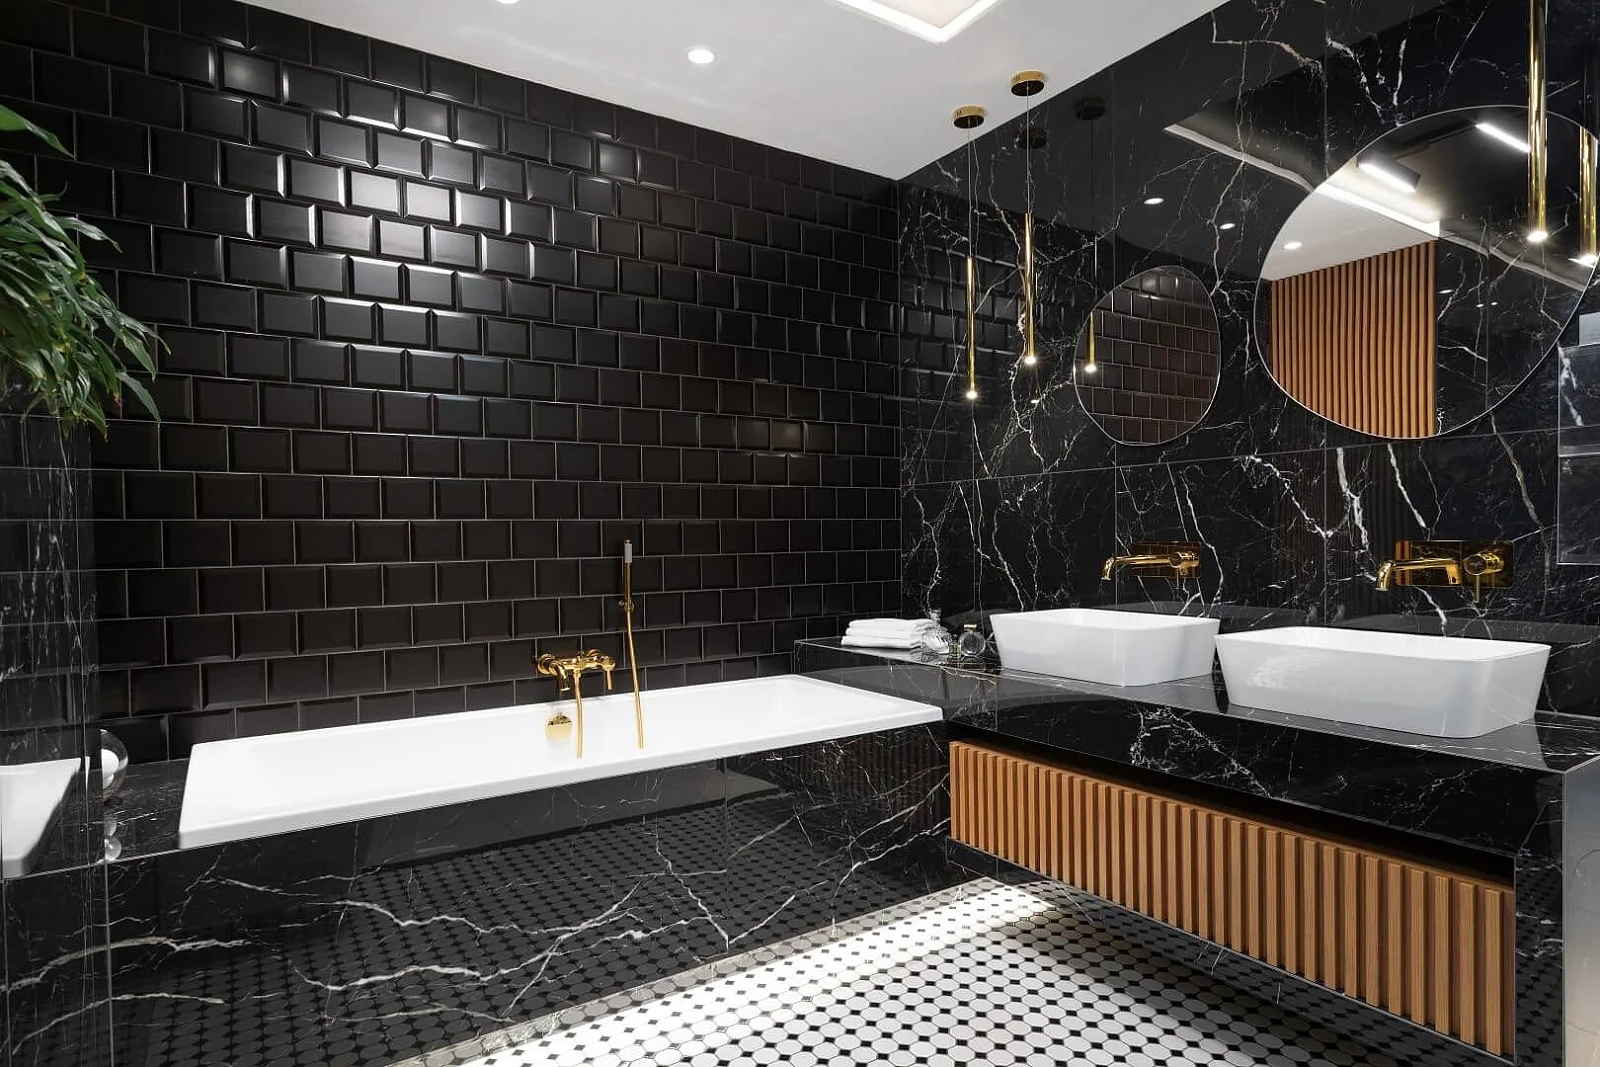 Czarna, elegancka, ponadczasowa — łazienka w stylu glamour (6).jpg [286.98 KB]